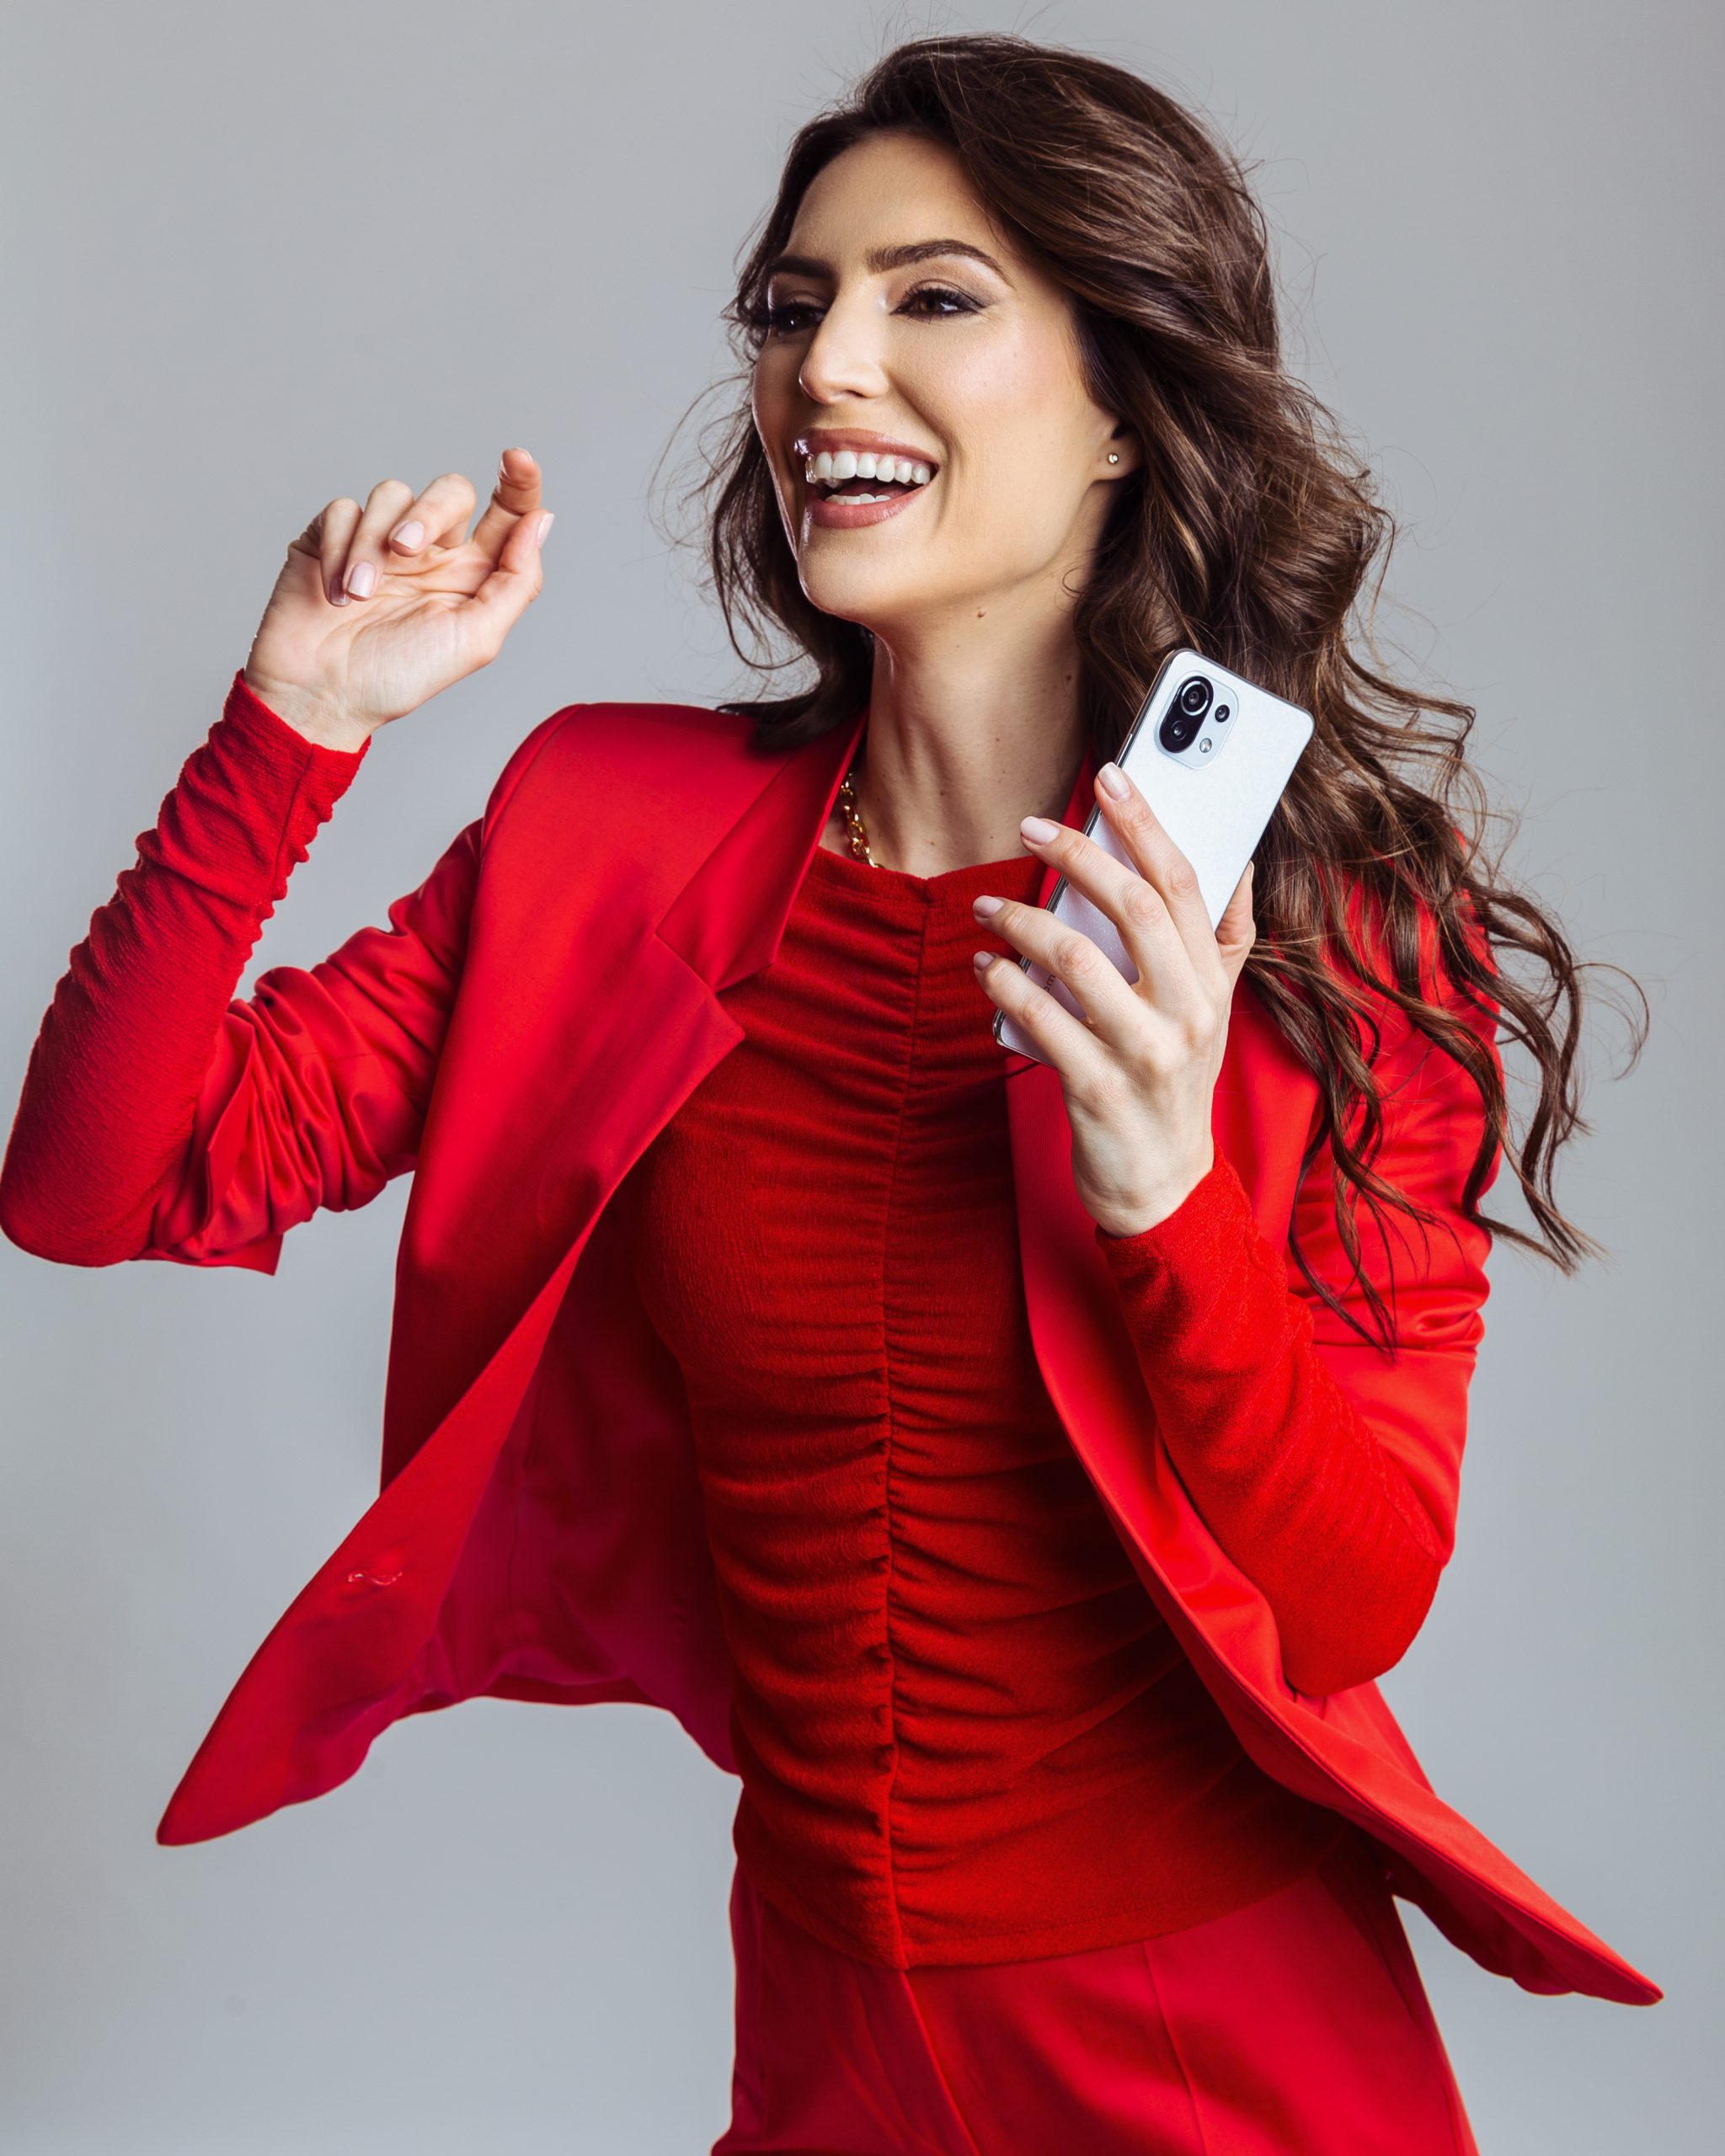 IMG 6304 scaled Žene menjaju svet, a njihova podrška u tome je Xiaomi 11 Lite 5G NE pametni telefon nove generacije i ženstvenog dizajna